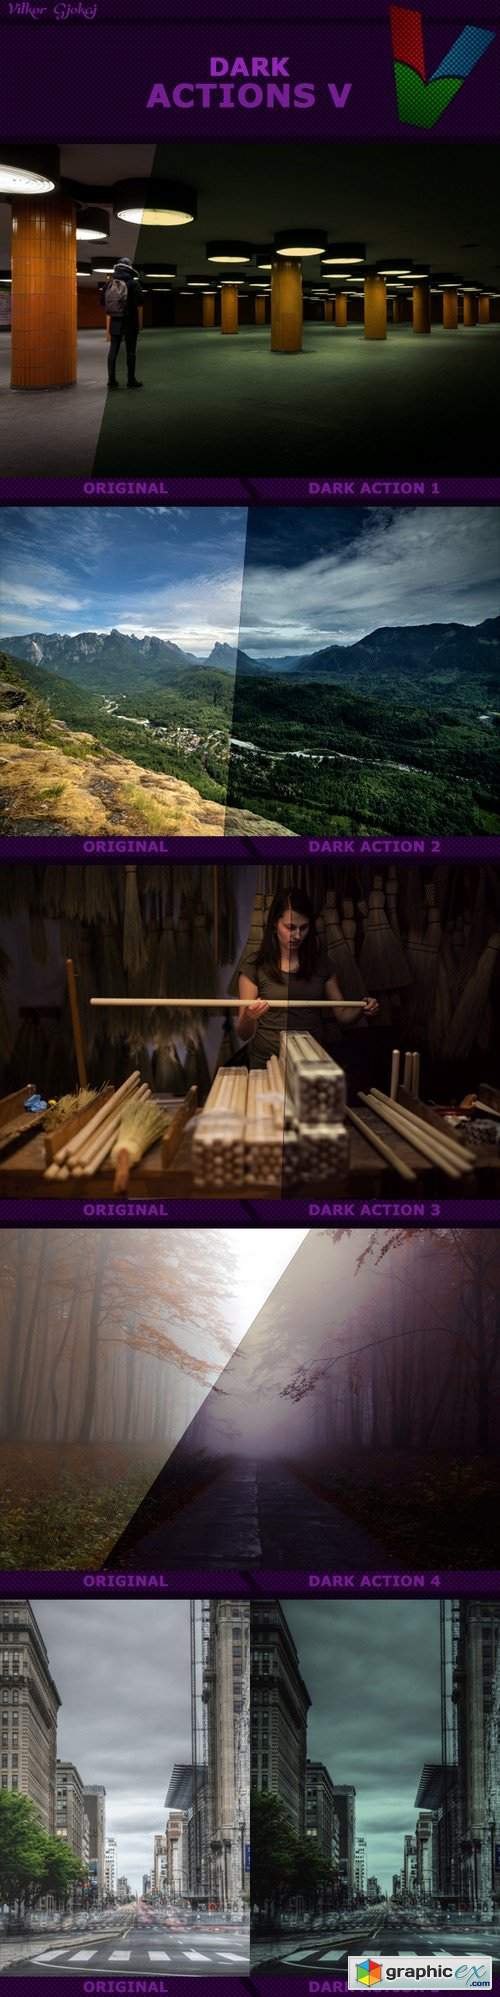 Dark Actions V